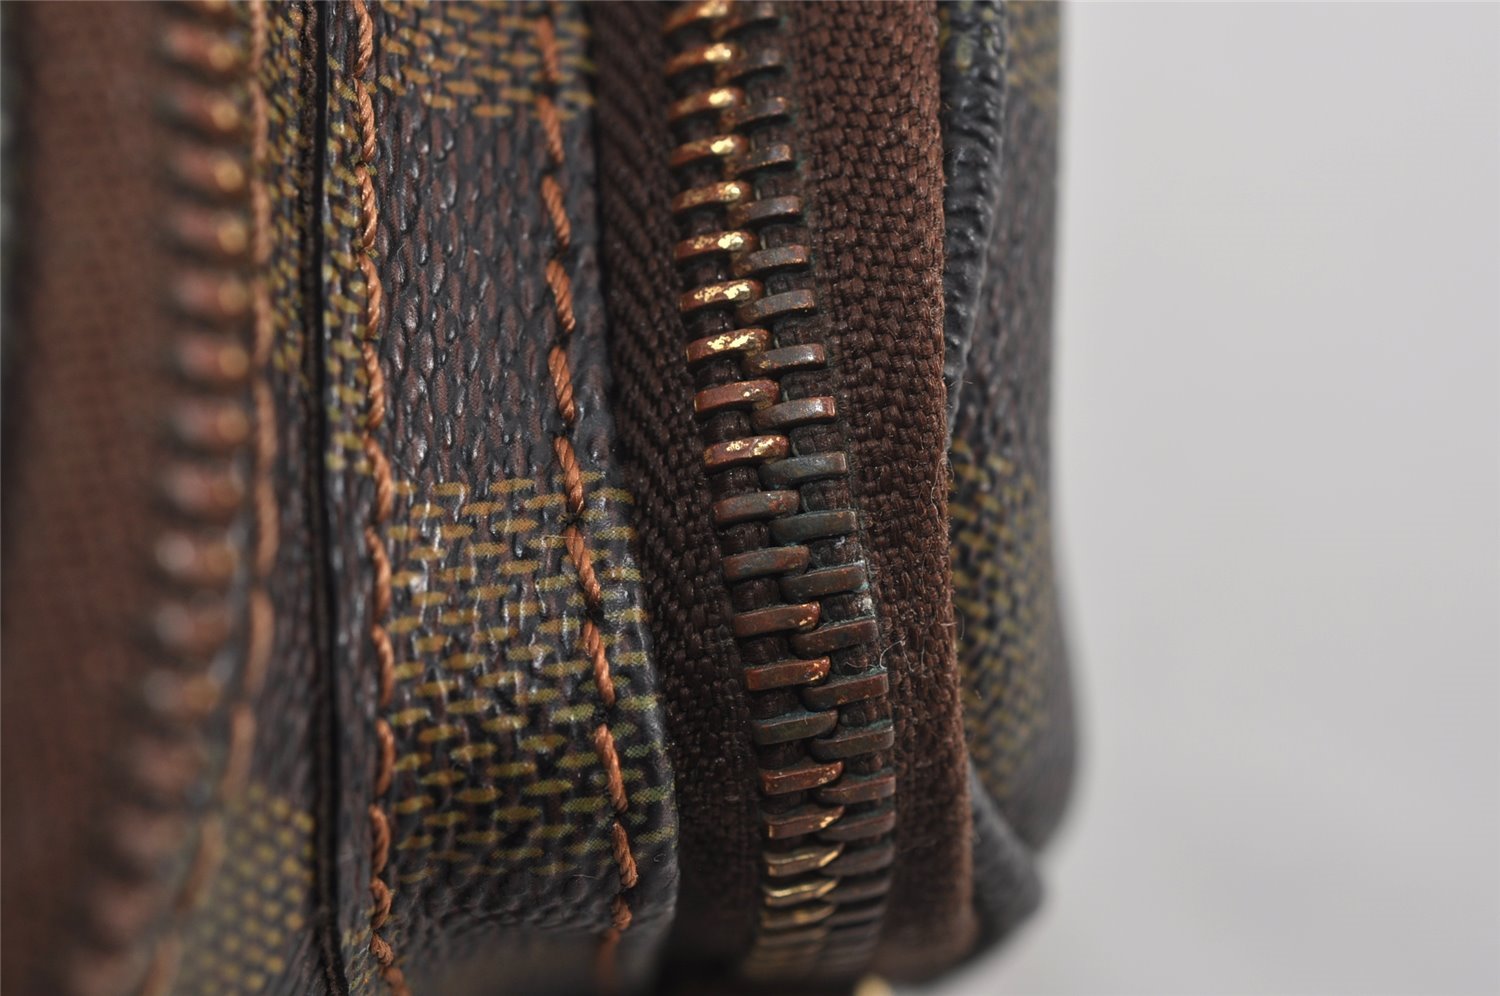 Authentic Louis Vuitton Damier Melville Waist Body Bag Purse N51172 LV 0970J